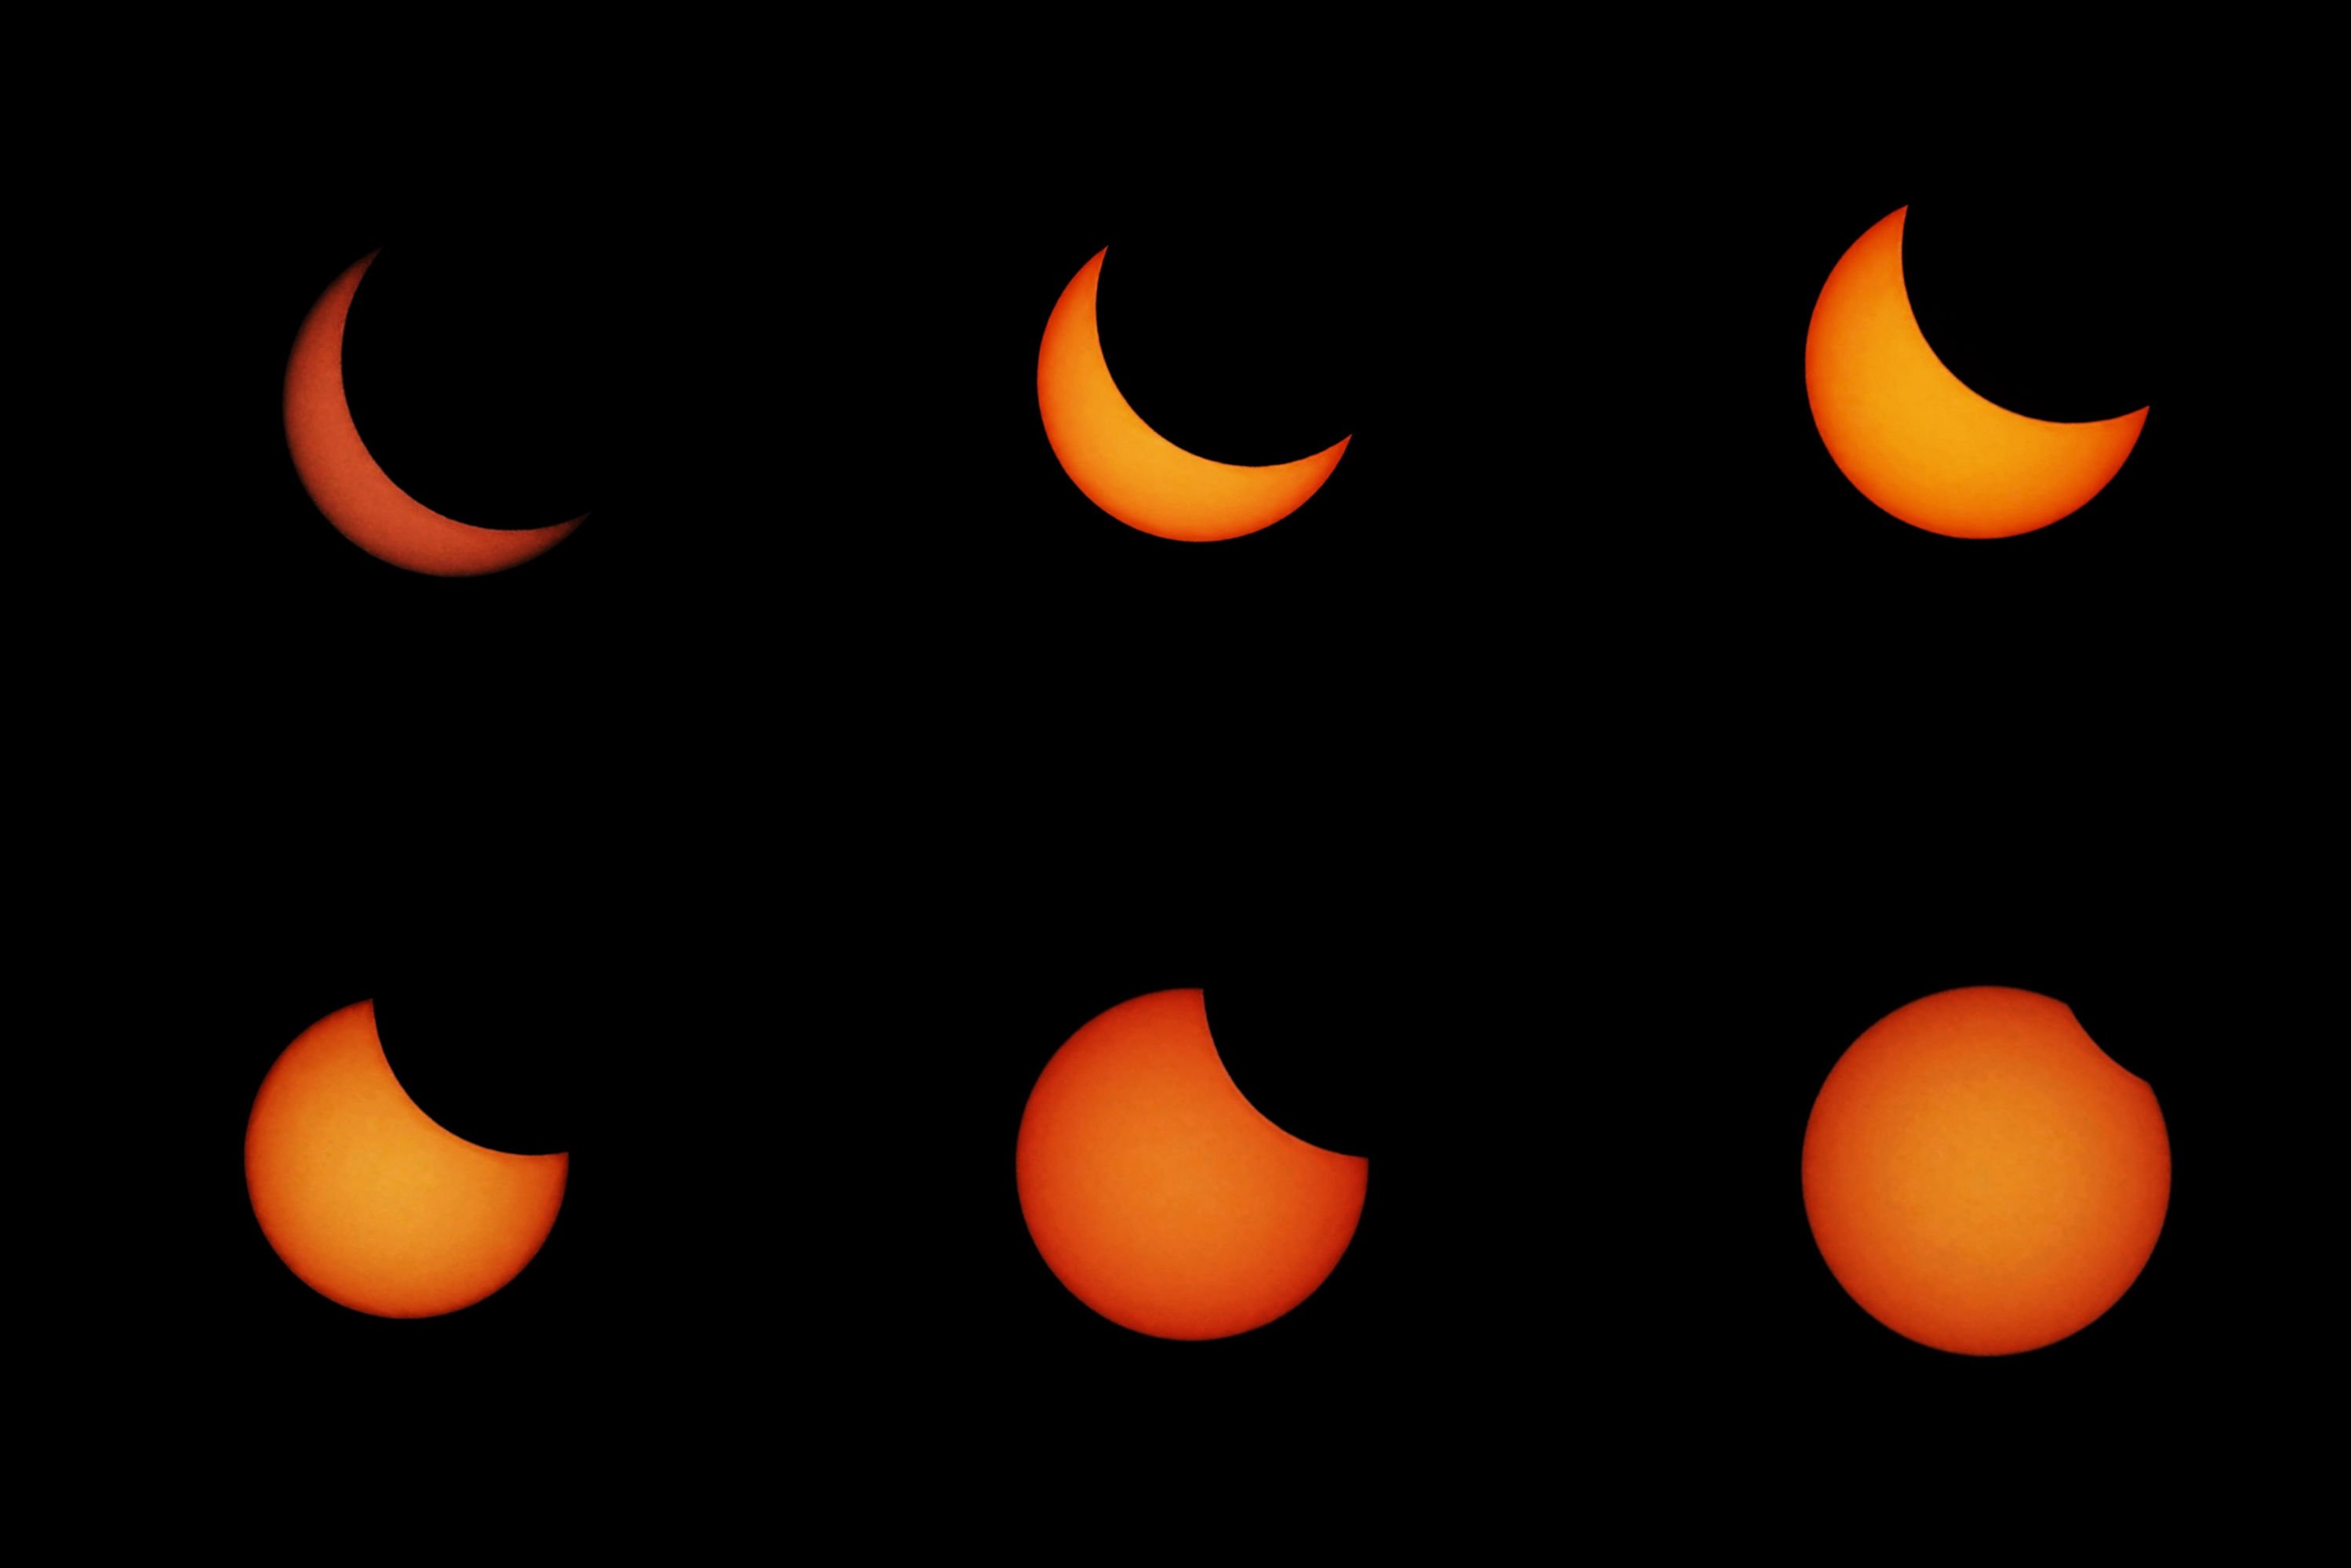 Gerhana matahari cincin saat ini merupakan gerhana kategori Siklus Saros, yaitu gerhana ke 46 dari total 71 kali gerhana.
